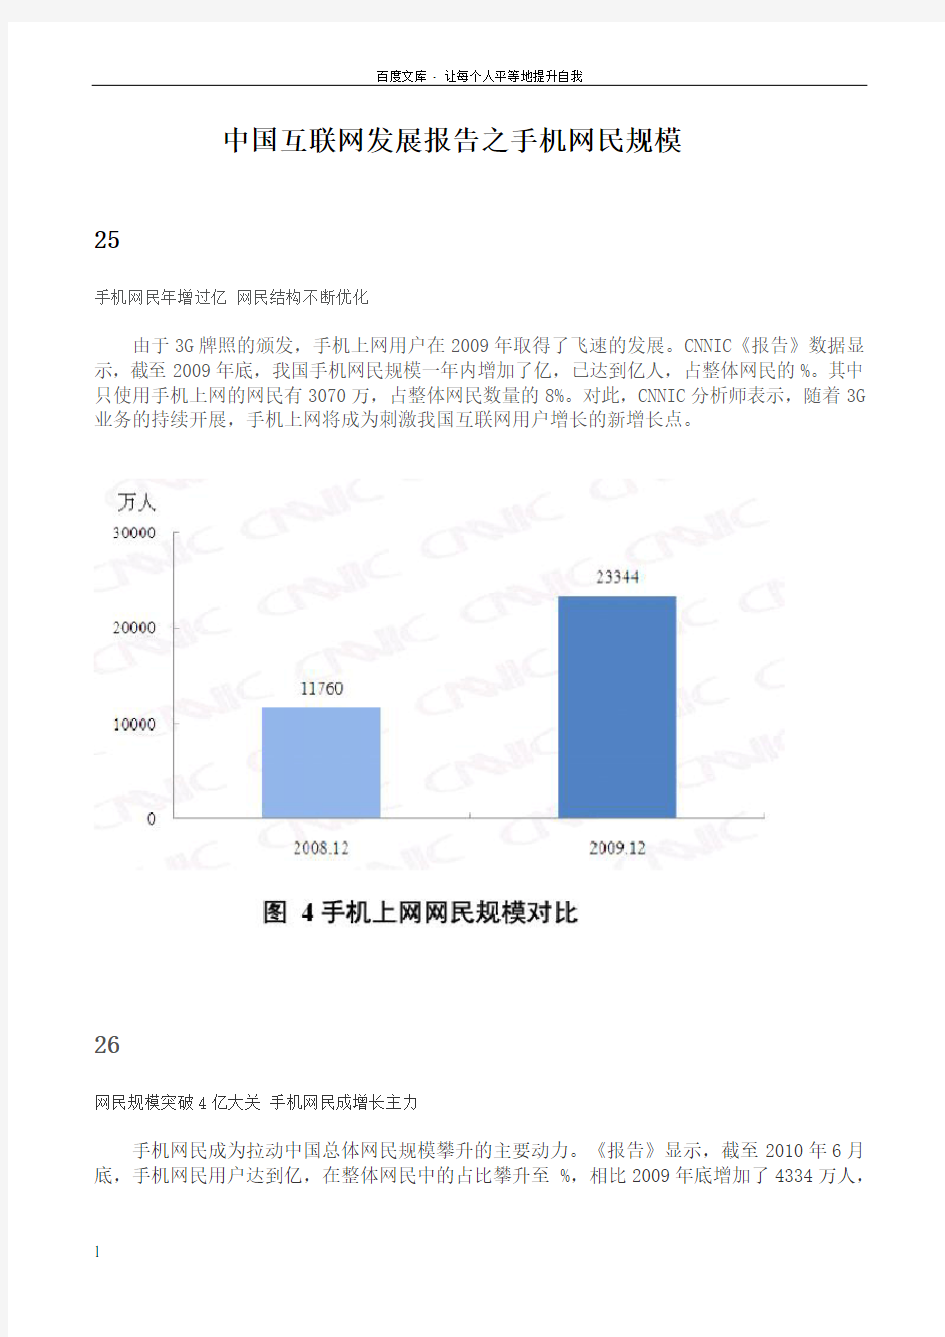 中国互联网发展报告之手机网民规模